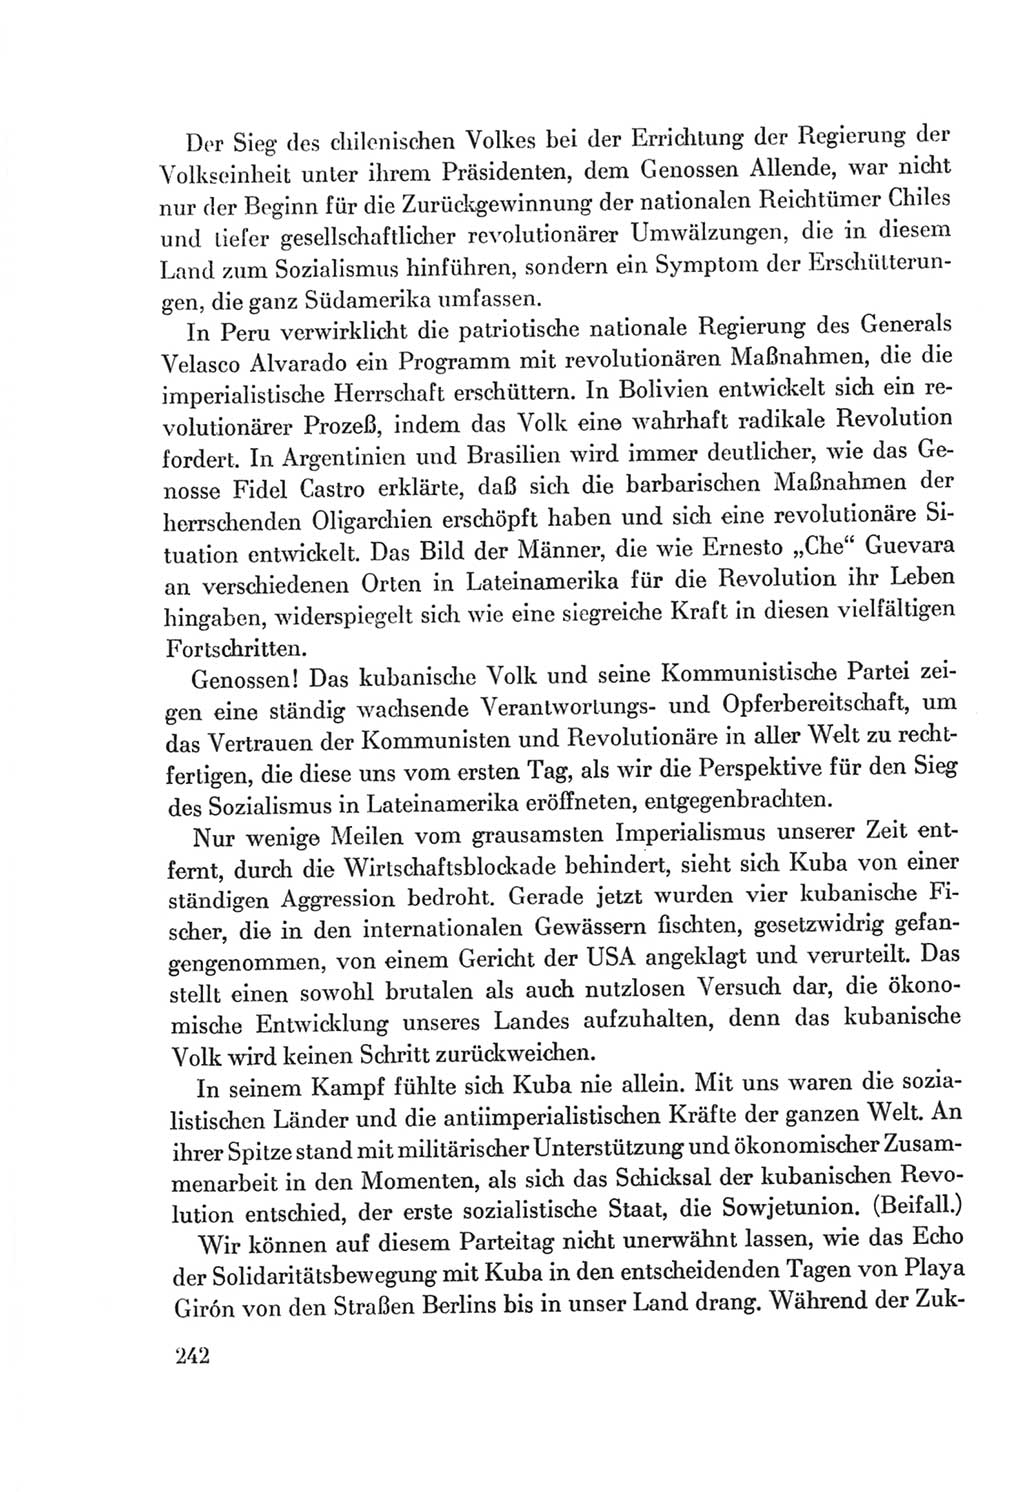 Protokoll der Verhandlungen des Ⅷ. Parteitages der Sozialistischen Einheitspartei Deutschlands (SED) [Deutsche Demokratische Republik (DDR)] 1971, Band 1, Seite 242 (Prot. Verh. Ⅷ. PT SED DDR 1971, Bd. 1, S. 242)